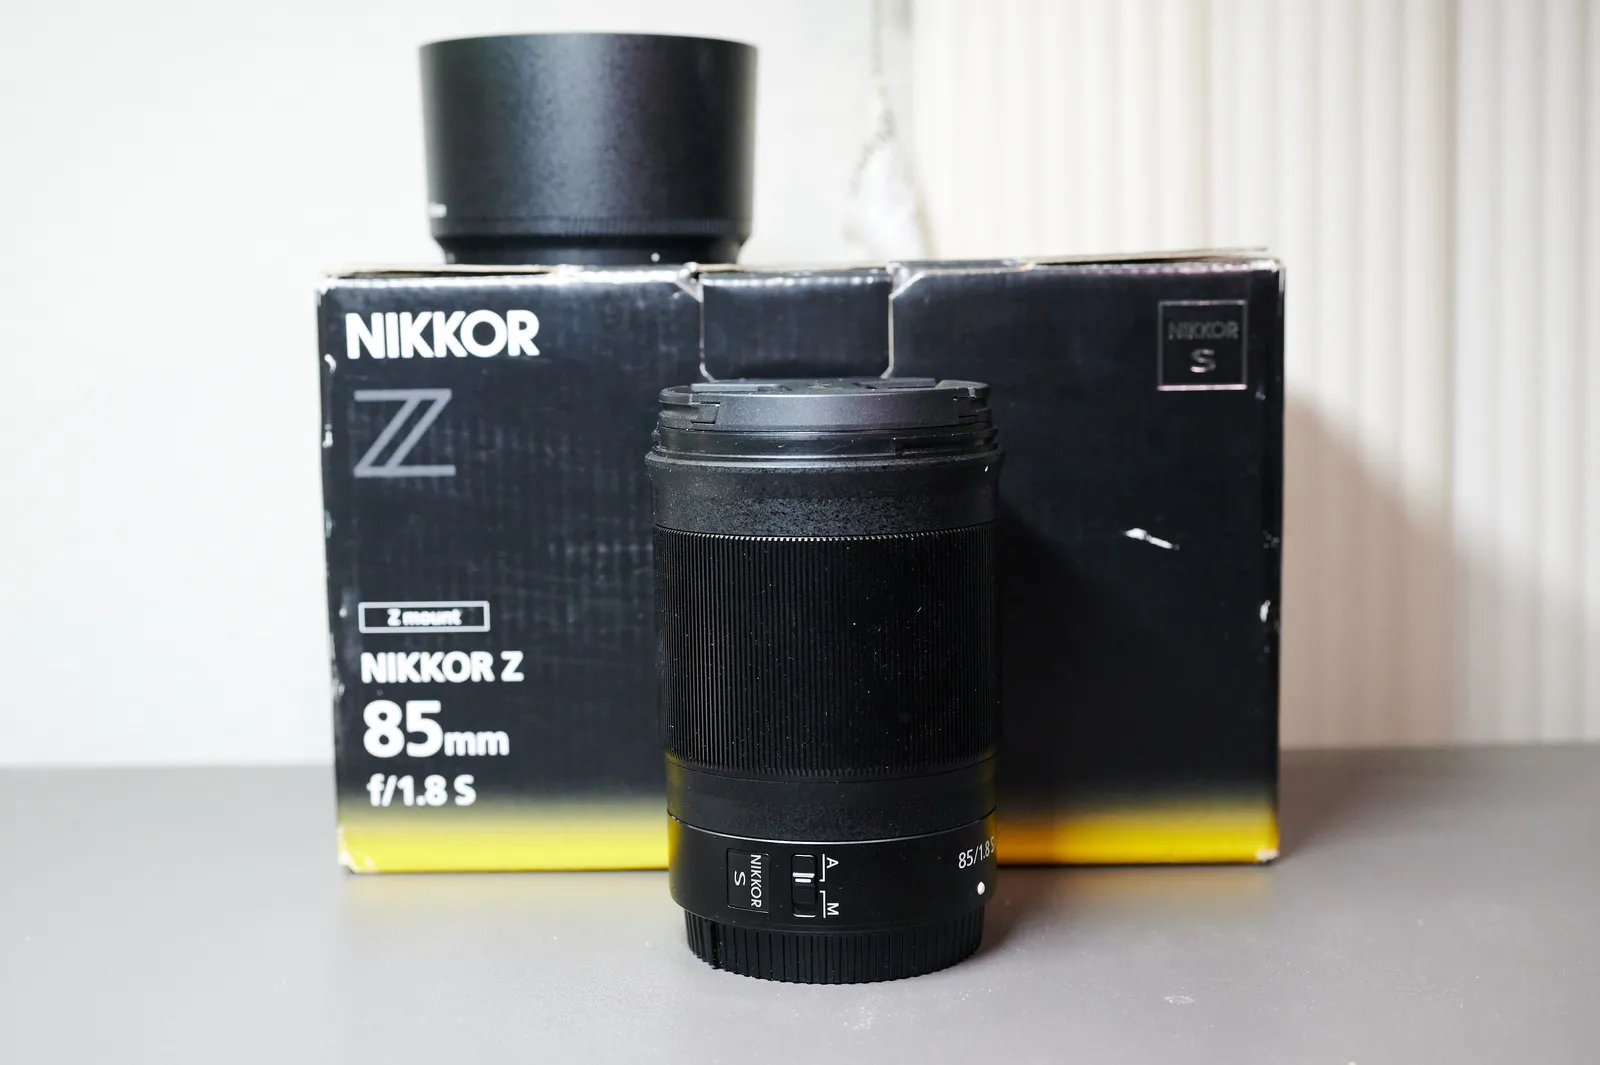 Nikon Nikkor Z 85mm f1.8 S Lens - with box